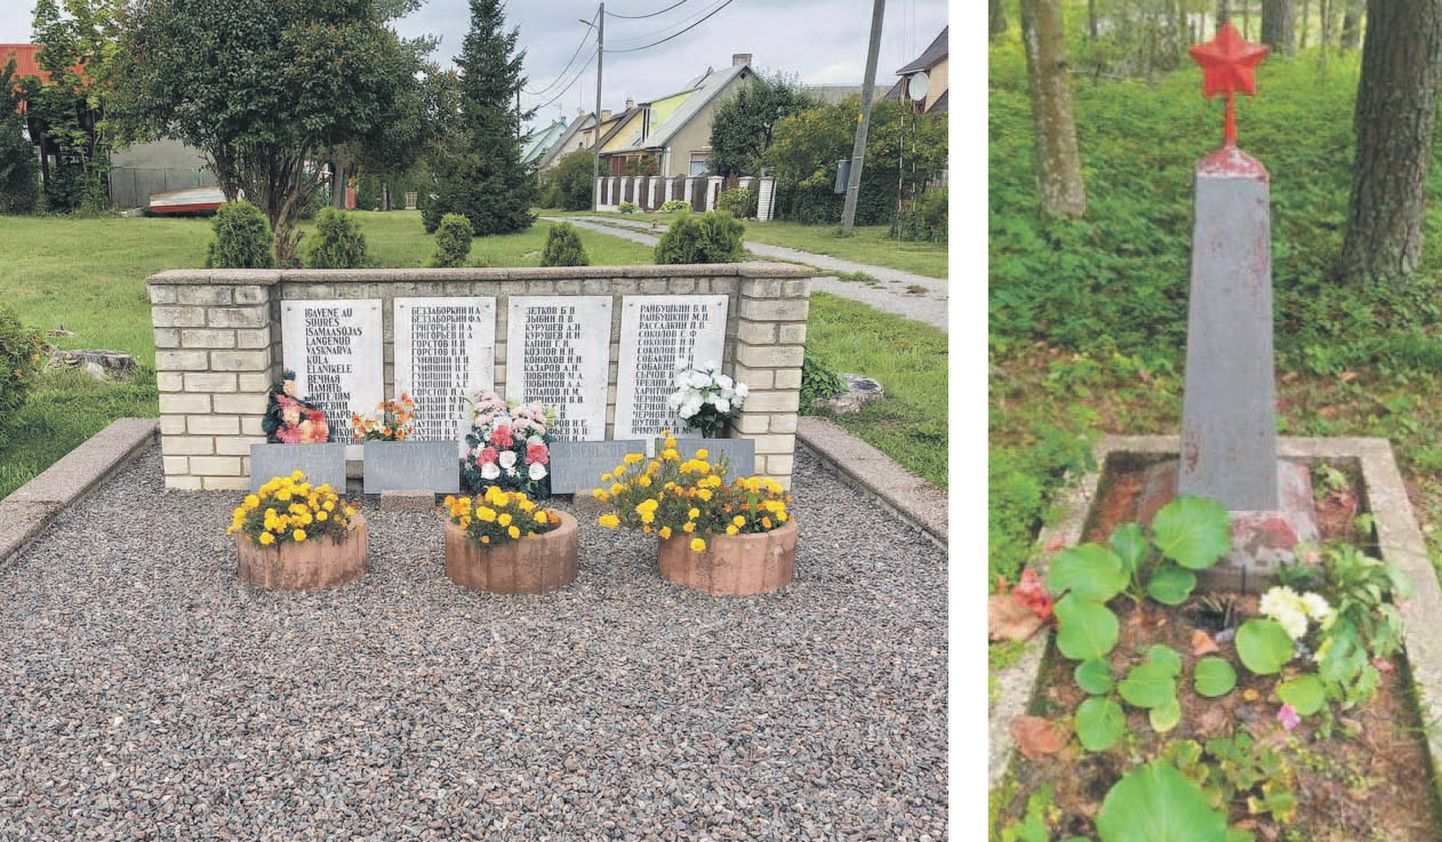 II maailmasõjas hukkunud külaelanikele pühendatud mälestuskivi teisaldab valla haldusettevõte kohalikule kalmistule. Katase tundmatu sõduri haua puhul peab kõigepealt selgitama, kas sinna üldse kedagi maetud on.